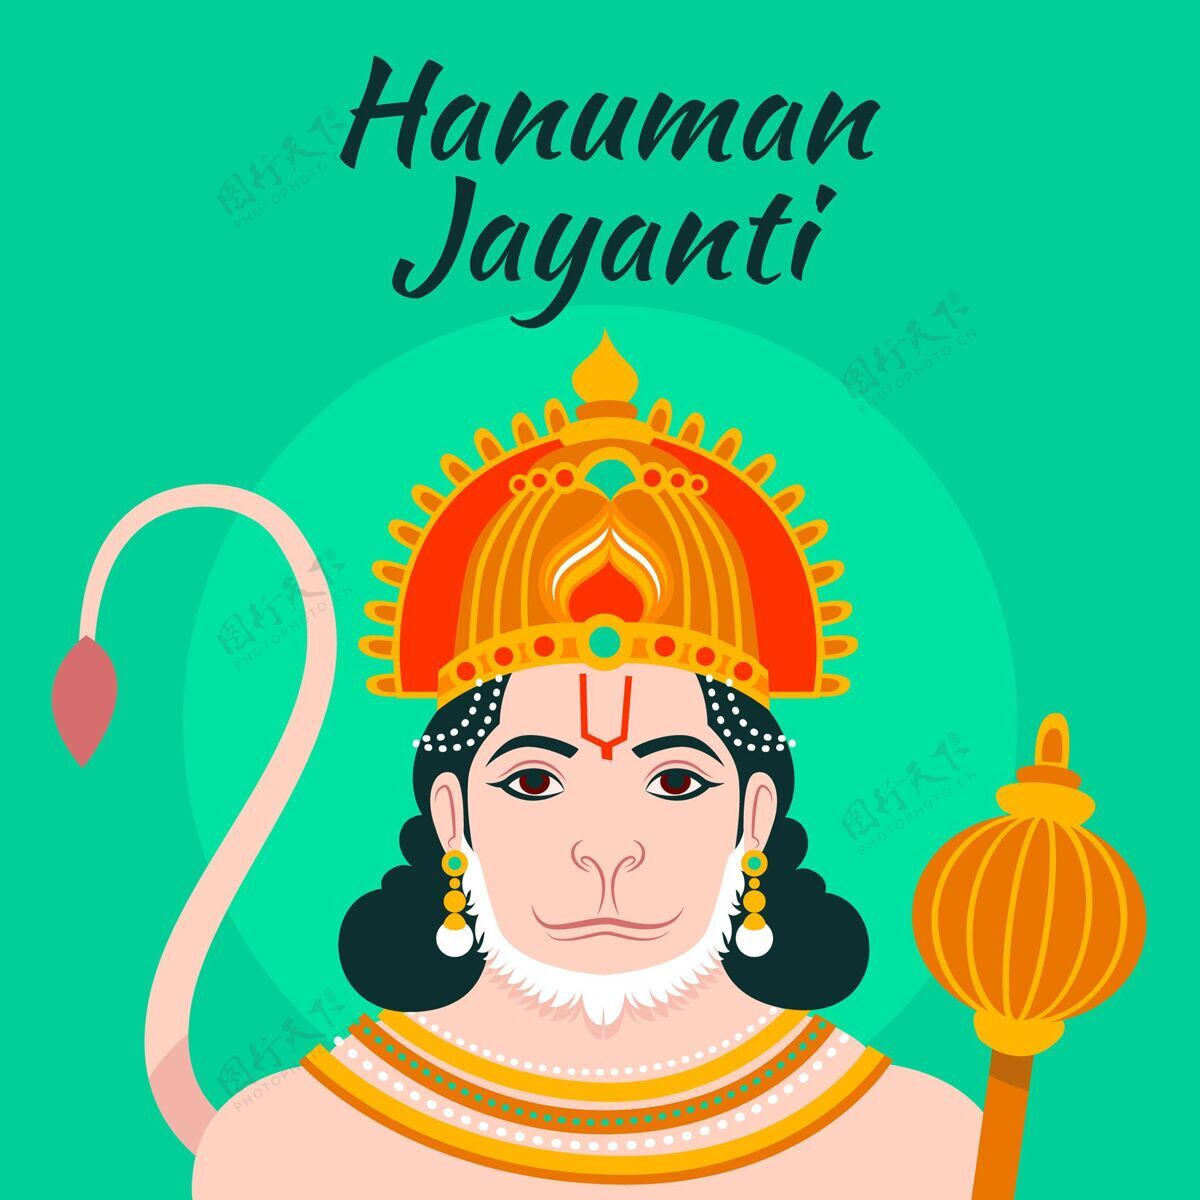 插图平面哈努曼jayanti插图宗教节日印度教